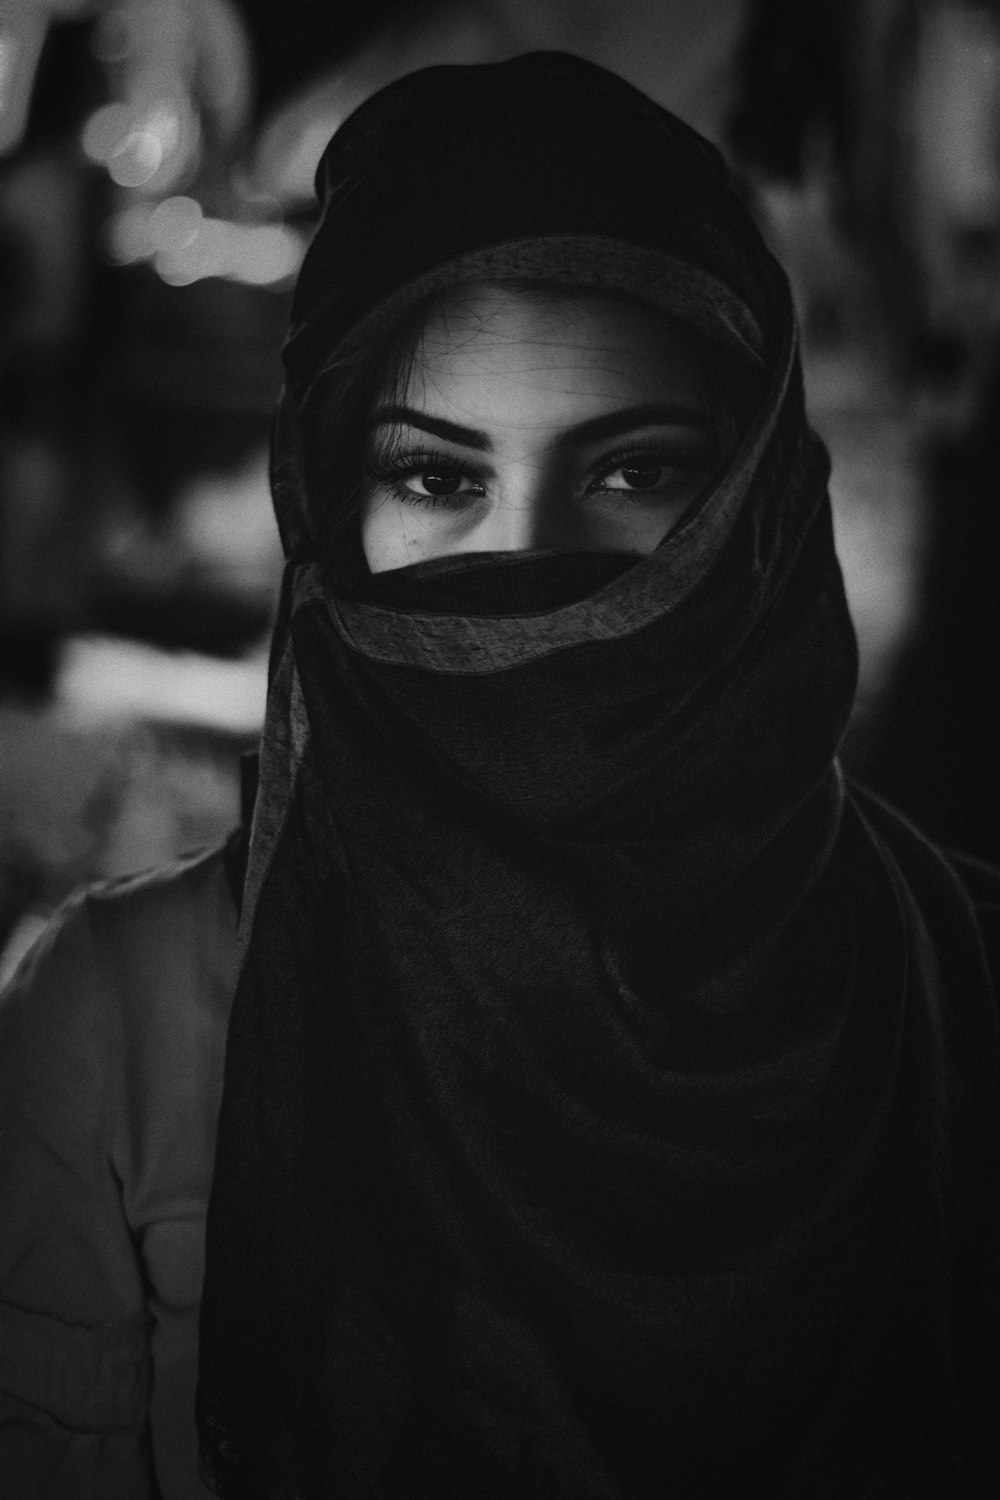 히잡을 쓴 여자의 그레이스케일 사진